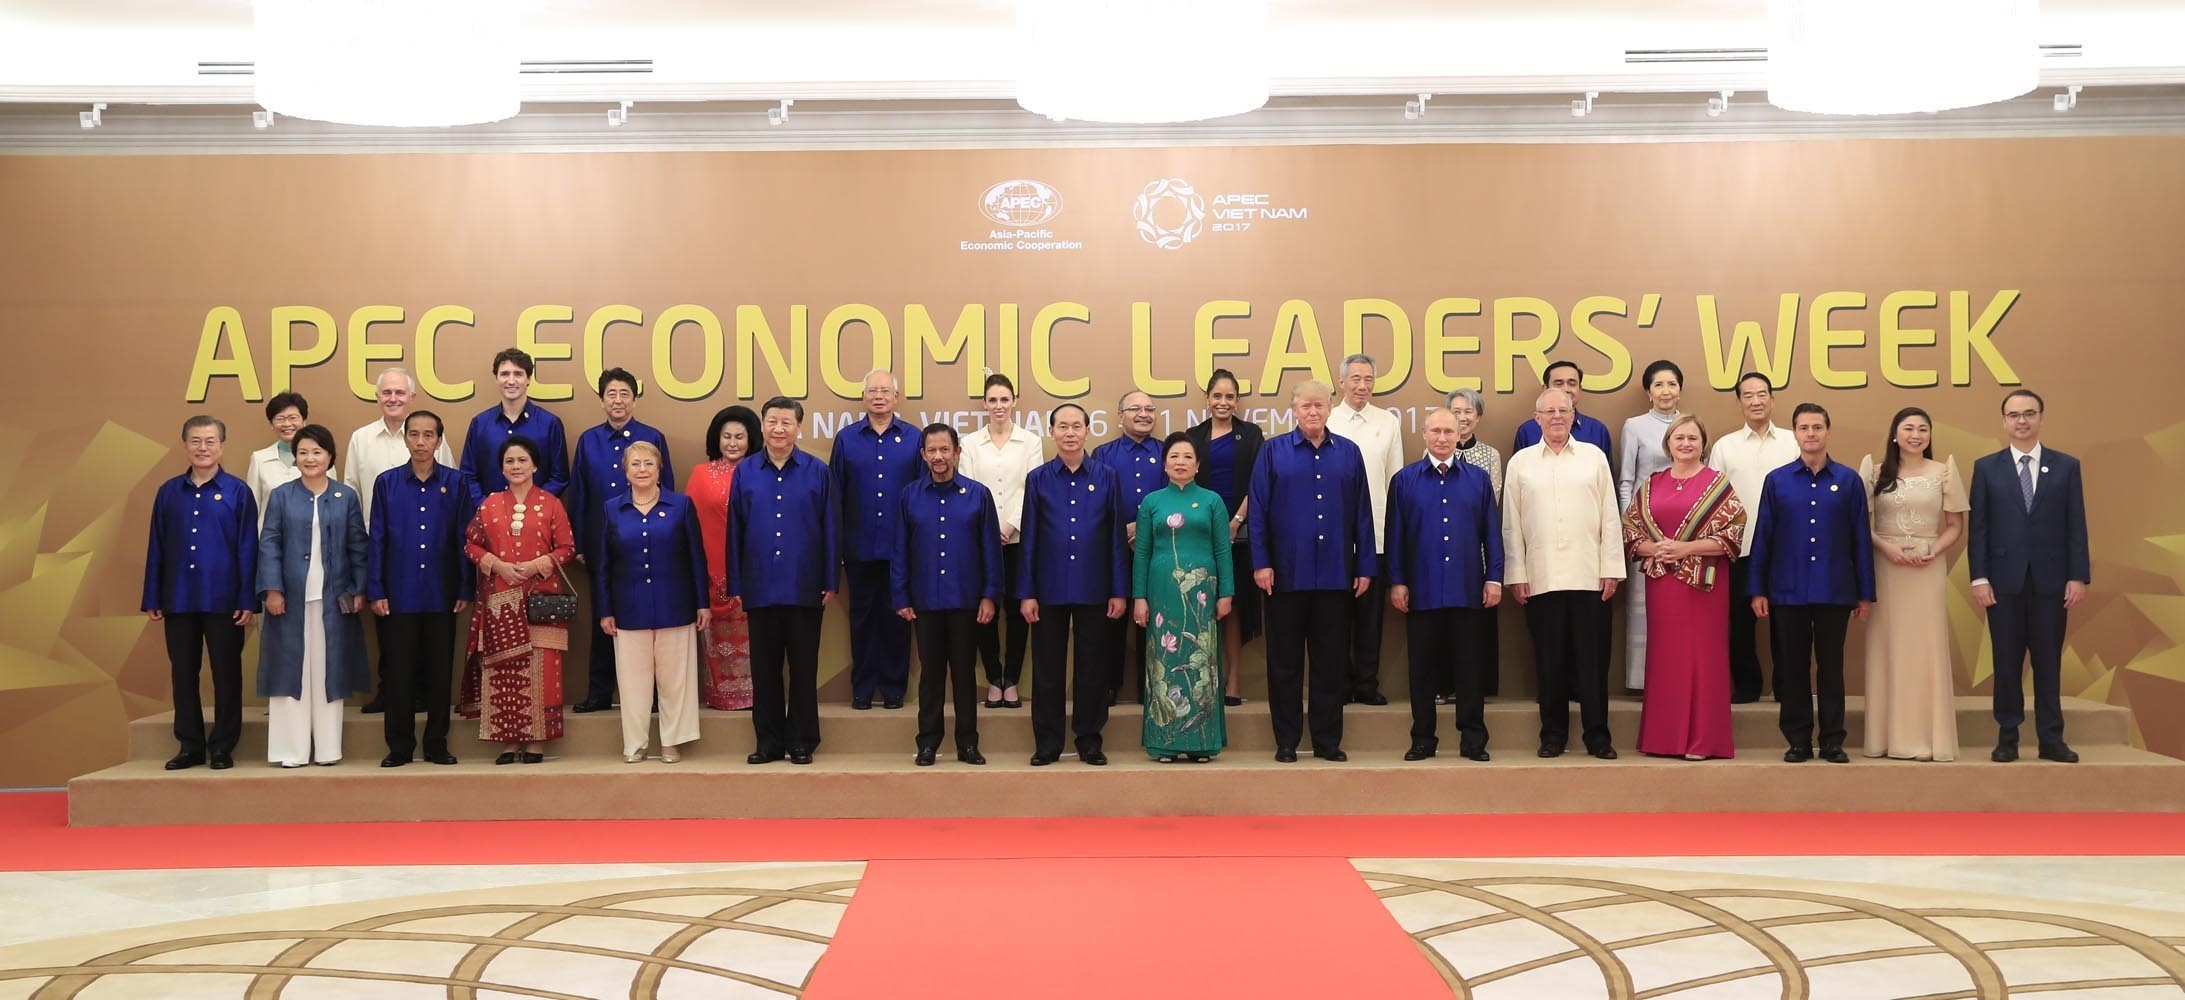 Các nhà lãnh đạo APEC trong bộ trang phục áo màu xanh chụp ảnh kỷ niệm tại Gala Dinner,